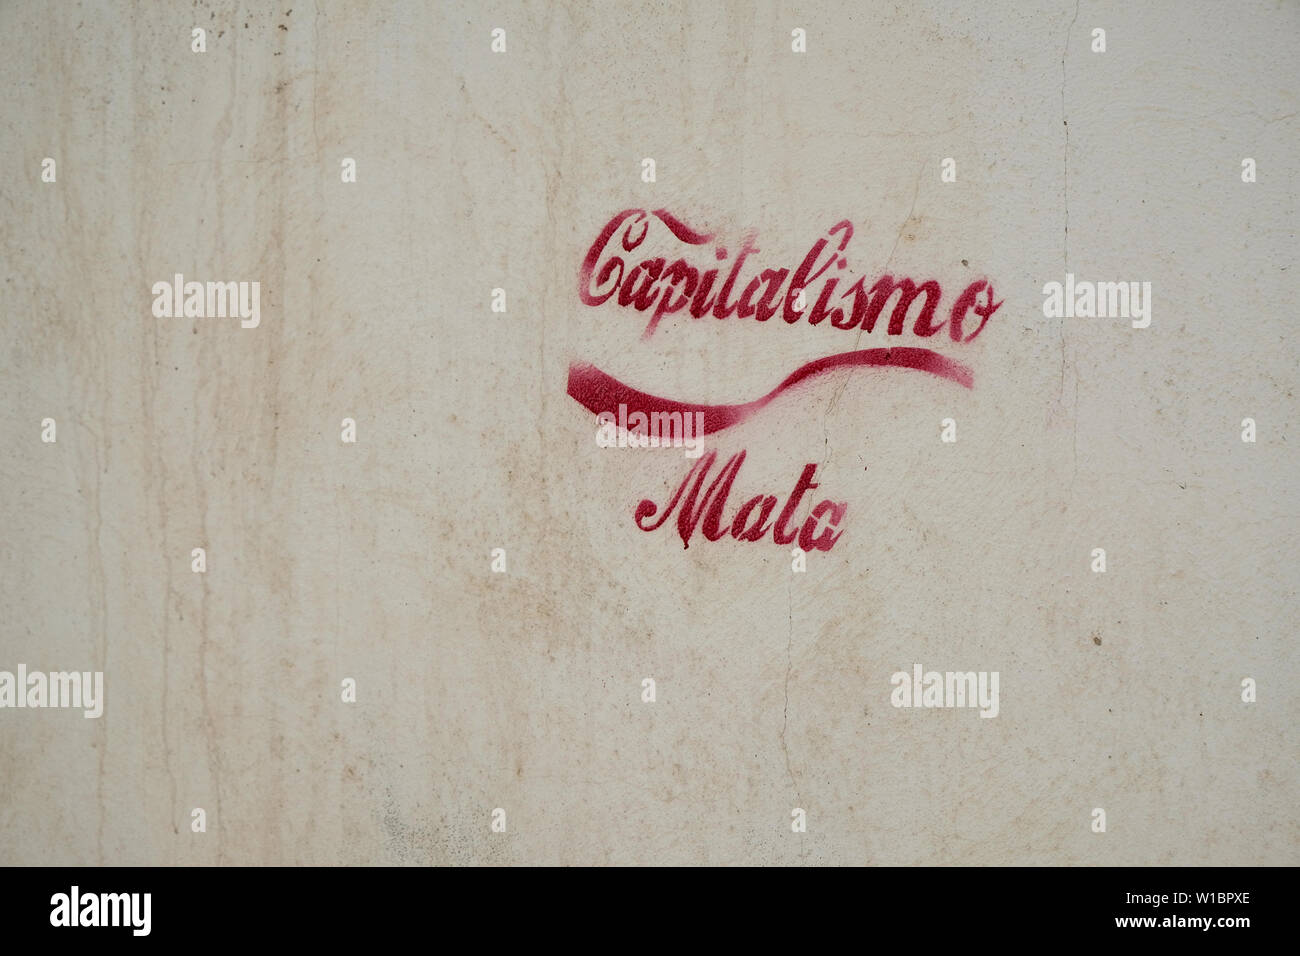 Capitalismo Mata (Kapitalismus tötet) Schablone mit roter Tinte und traditionellen Coca Cola Font mit Wave oder dynamic Ribbon Device an einer Wand in Granada, Spanien. Stockfoto